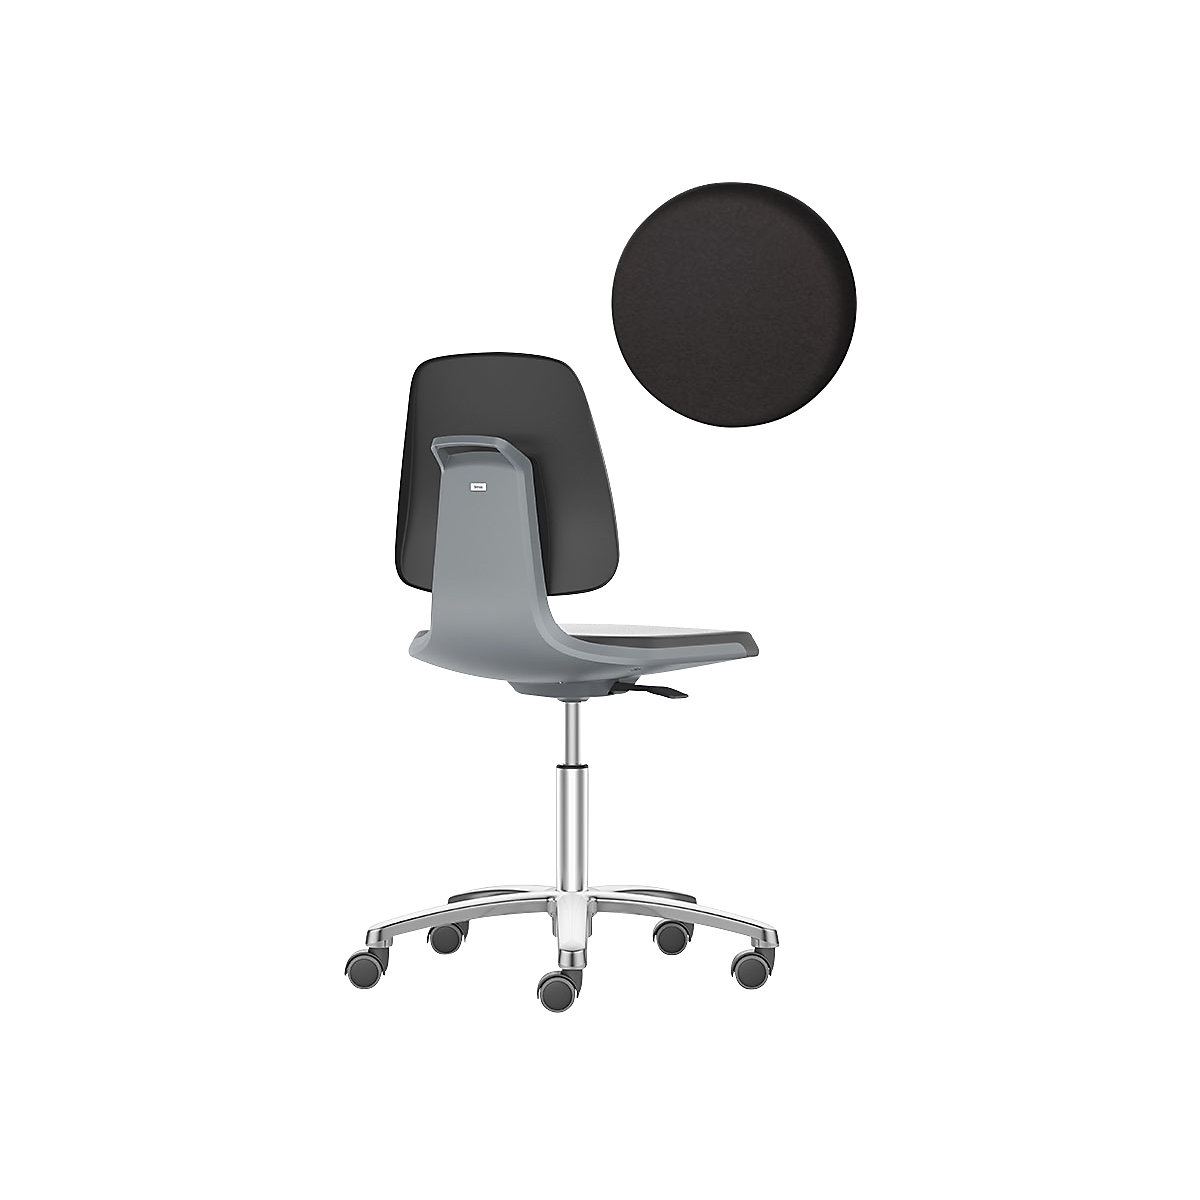 Pracovná otočná stolička LABSIT – bimos, päť nôh s kolieskami, sedadlo z PU peny, antracitová-29